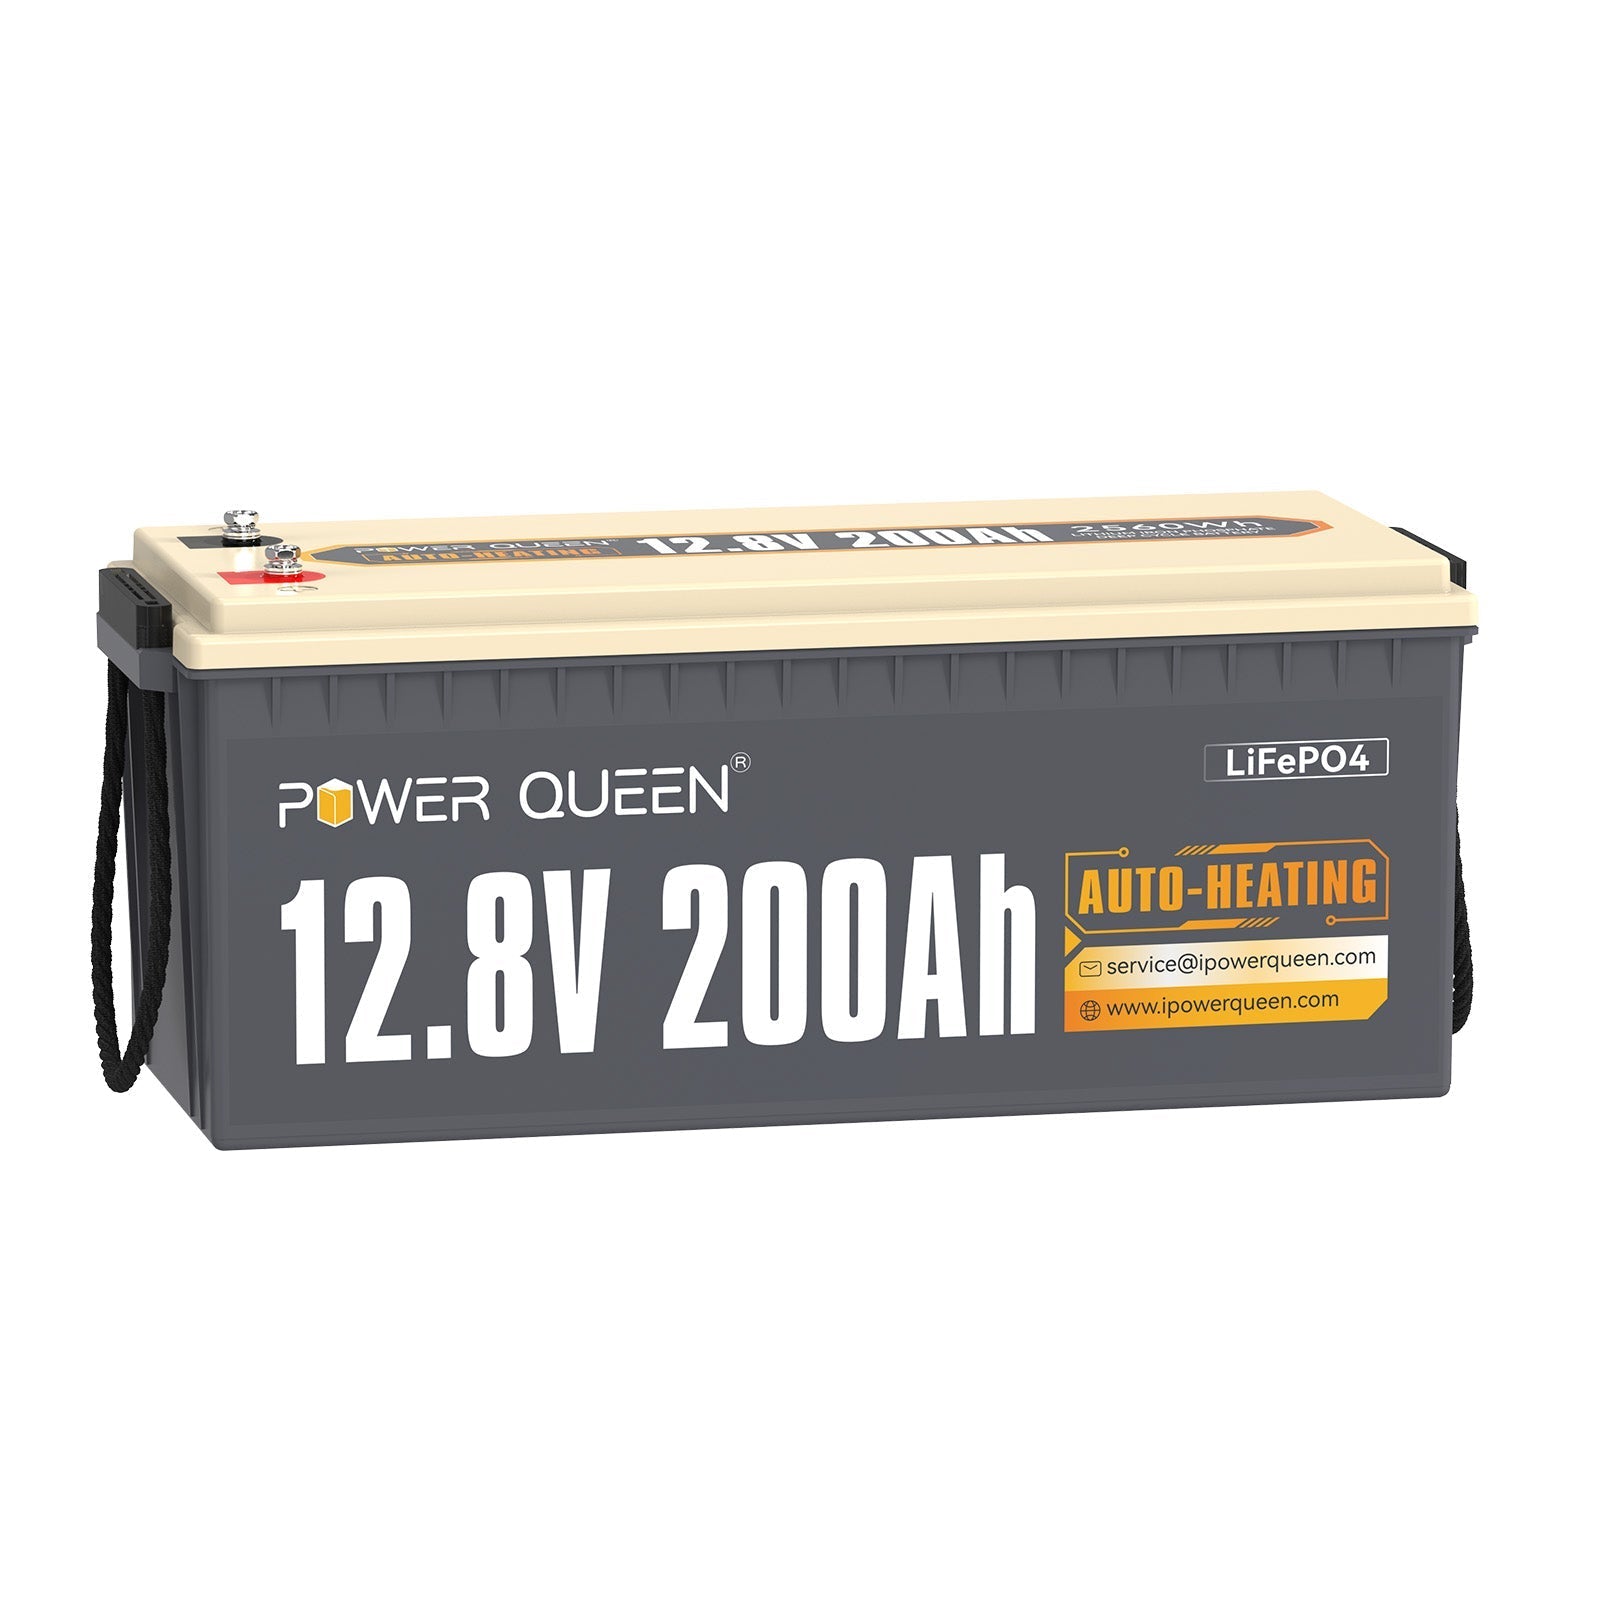 【Als nieuw】Power Queen 12,8 V 200 Ah zelfverwarmende LiFePO4-batterij, ingebouwd 100 A BMS